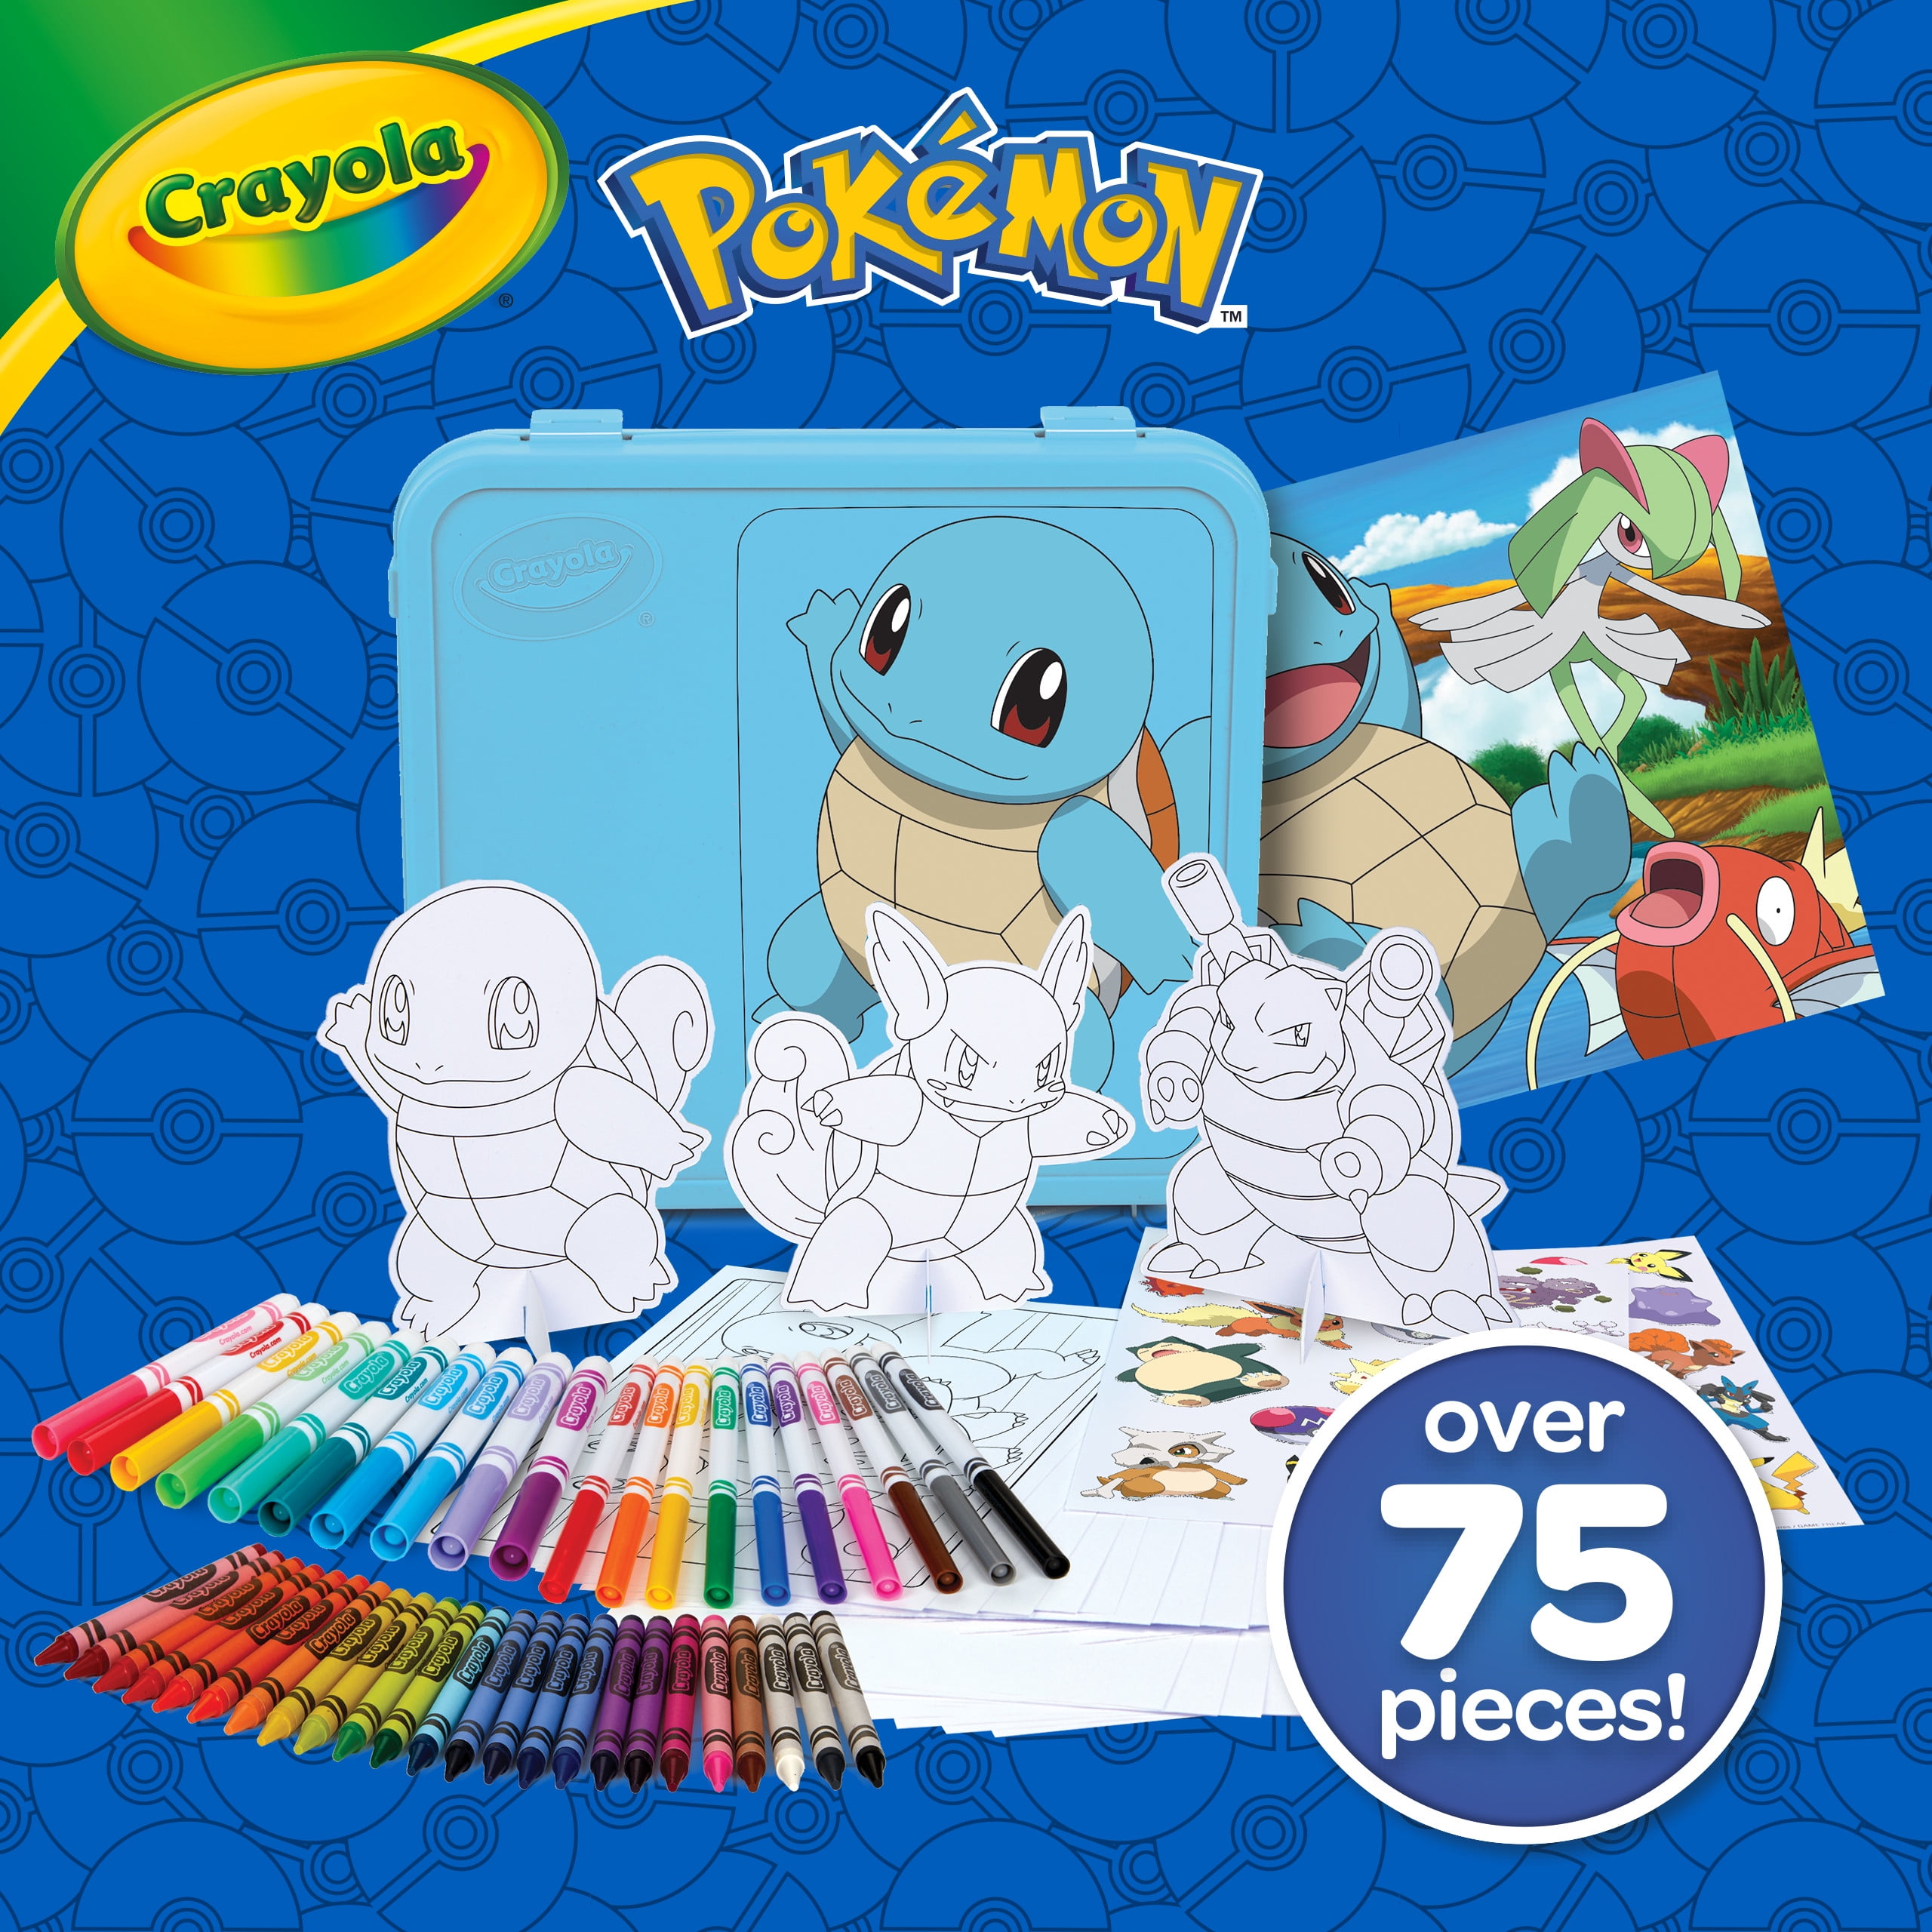 Crayola Pokemon Art Case - ShopStyle